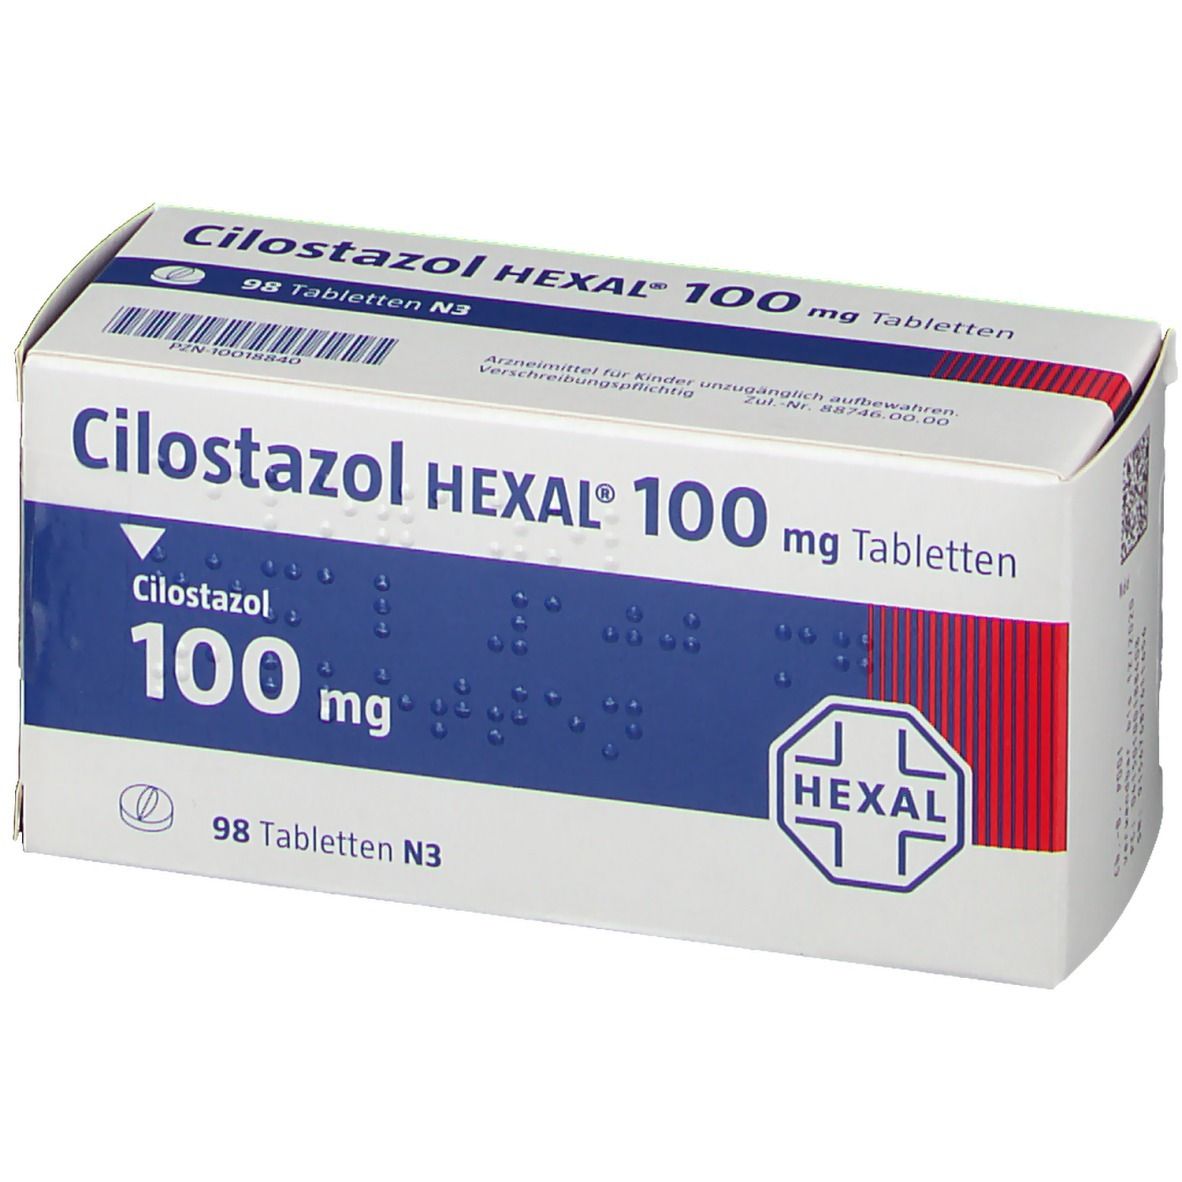 Cilostazol HEXAL® 100 mg